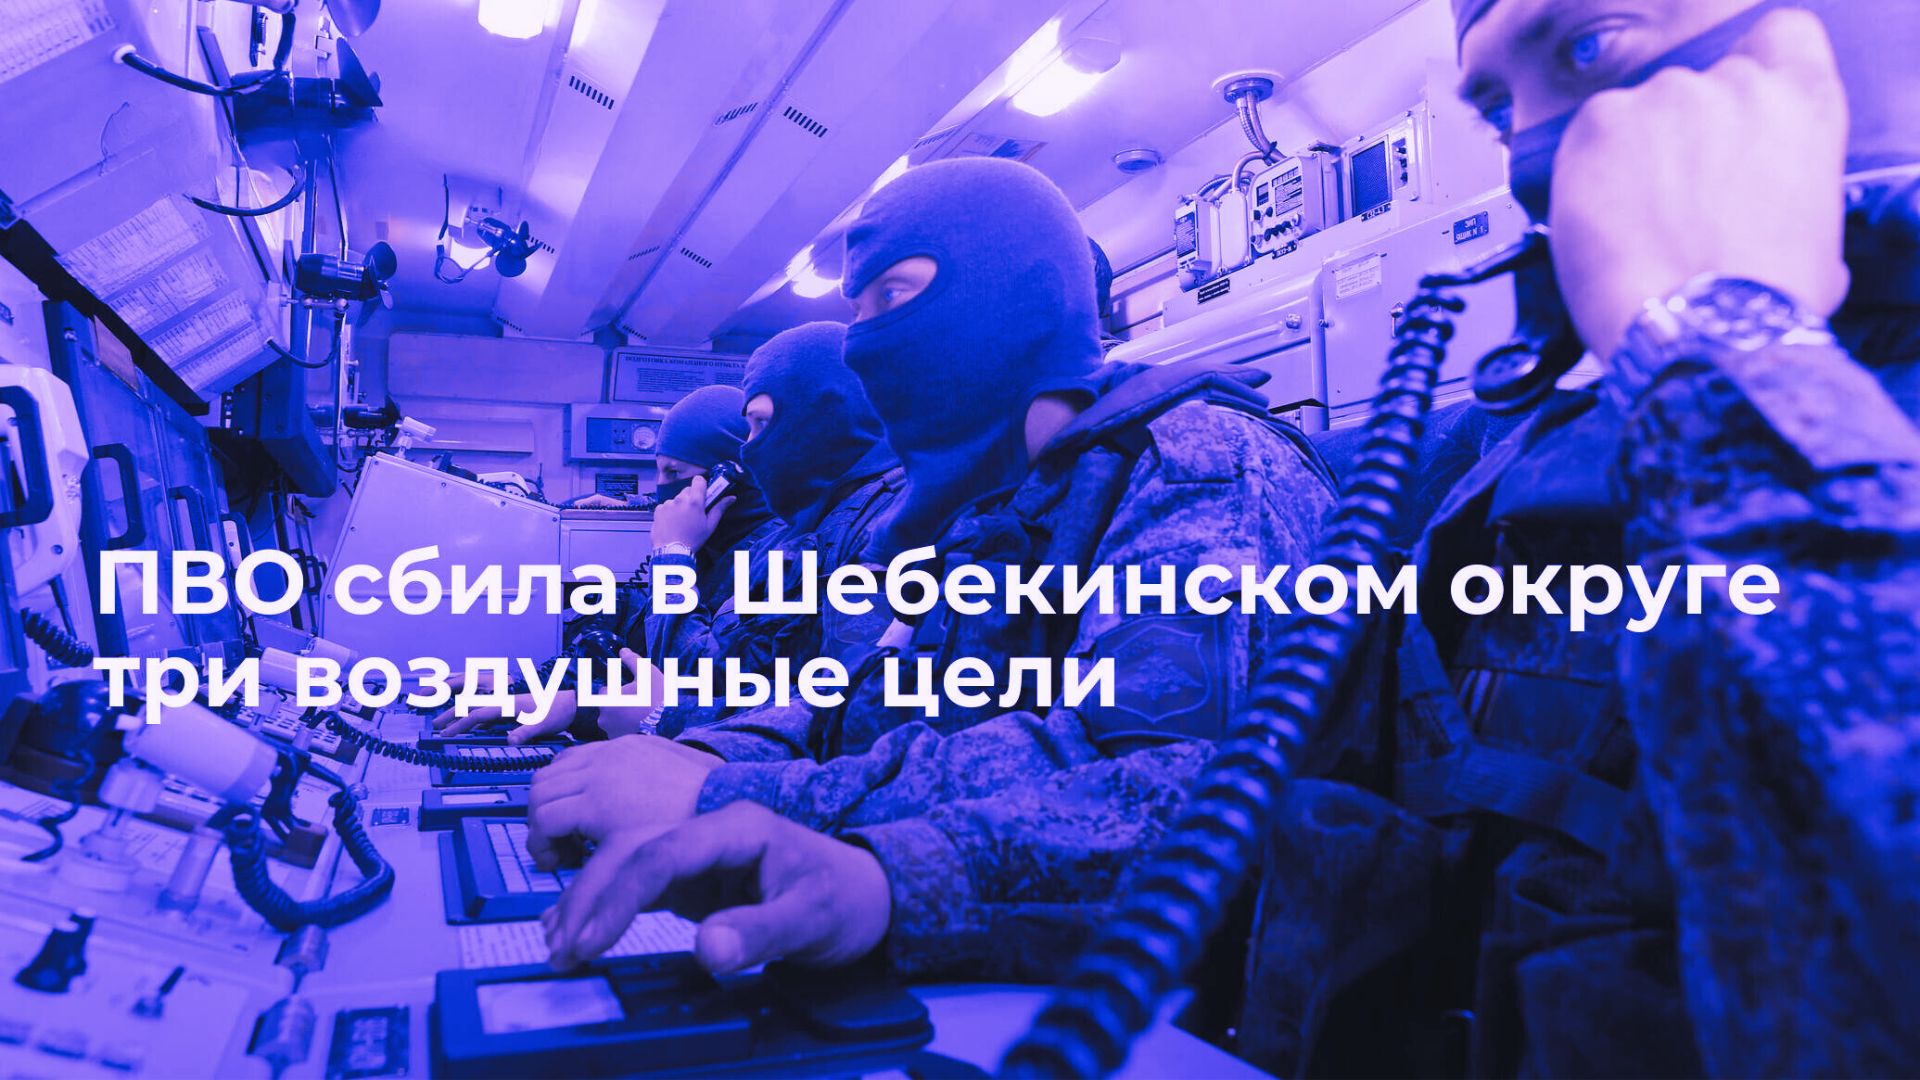 Губернатор Белгородской области сообщает о успешной обороне от атаки последние новости